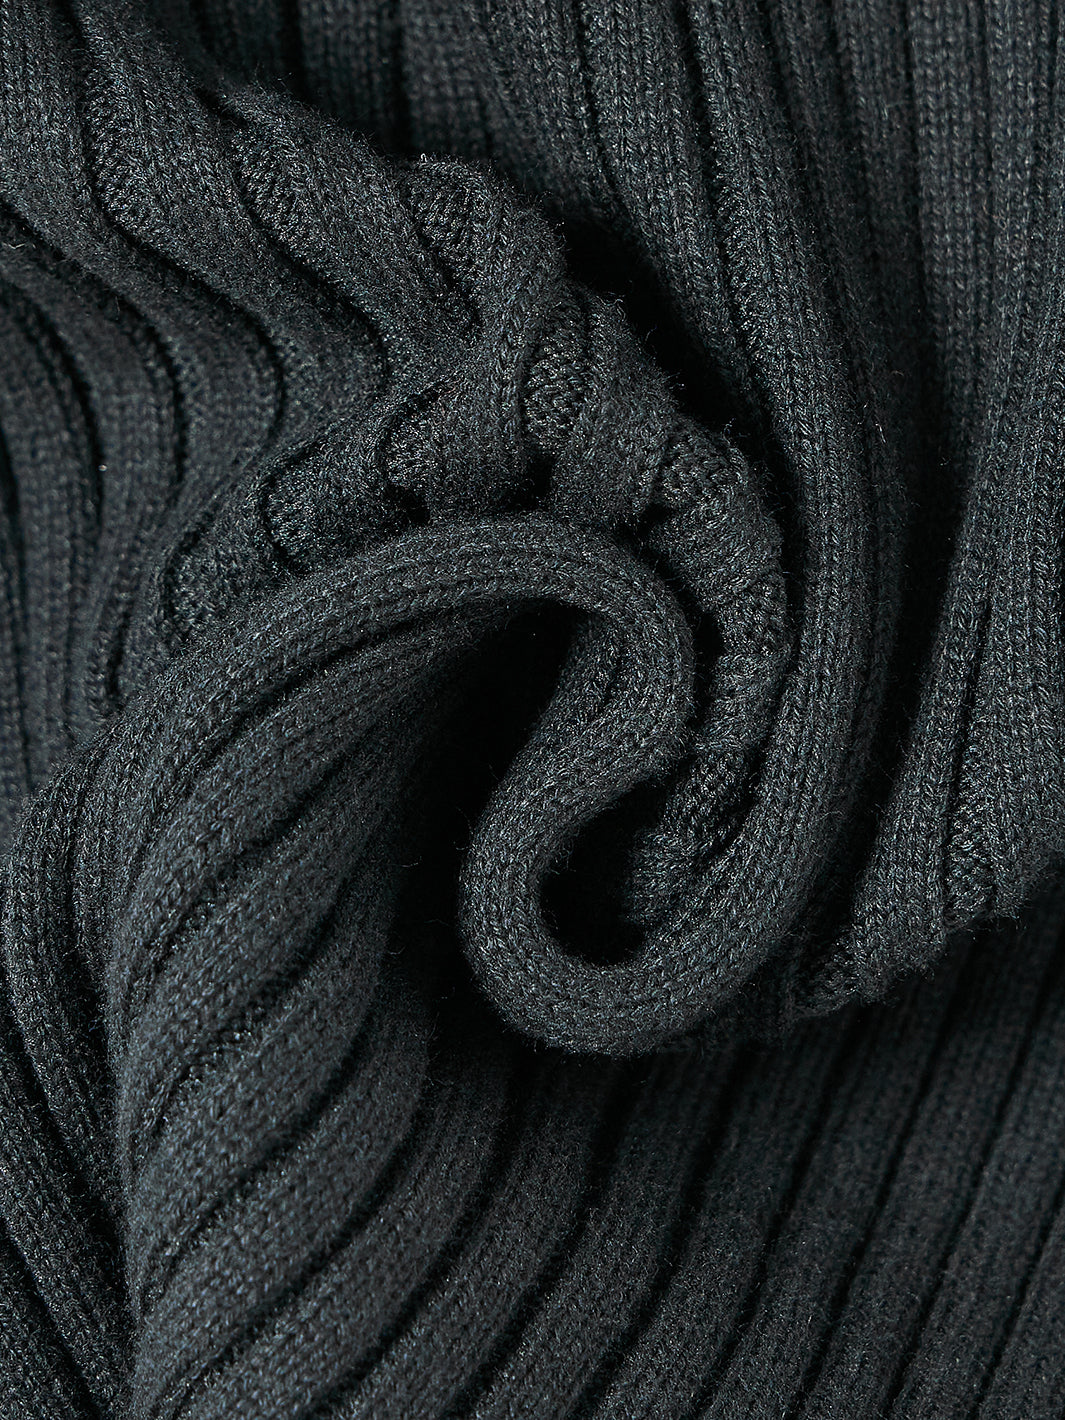 Solid Turtleneck Basic Sweater - Black